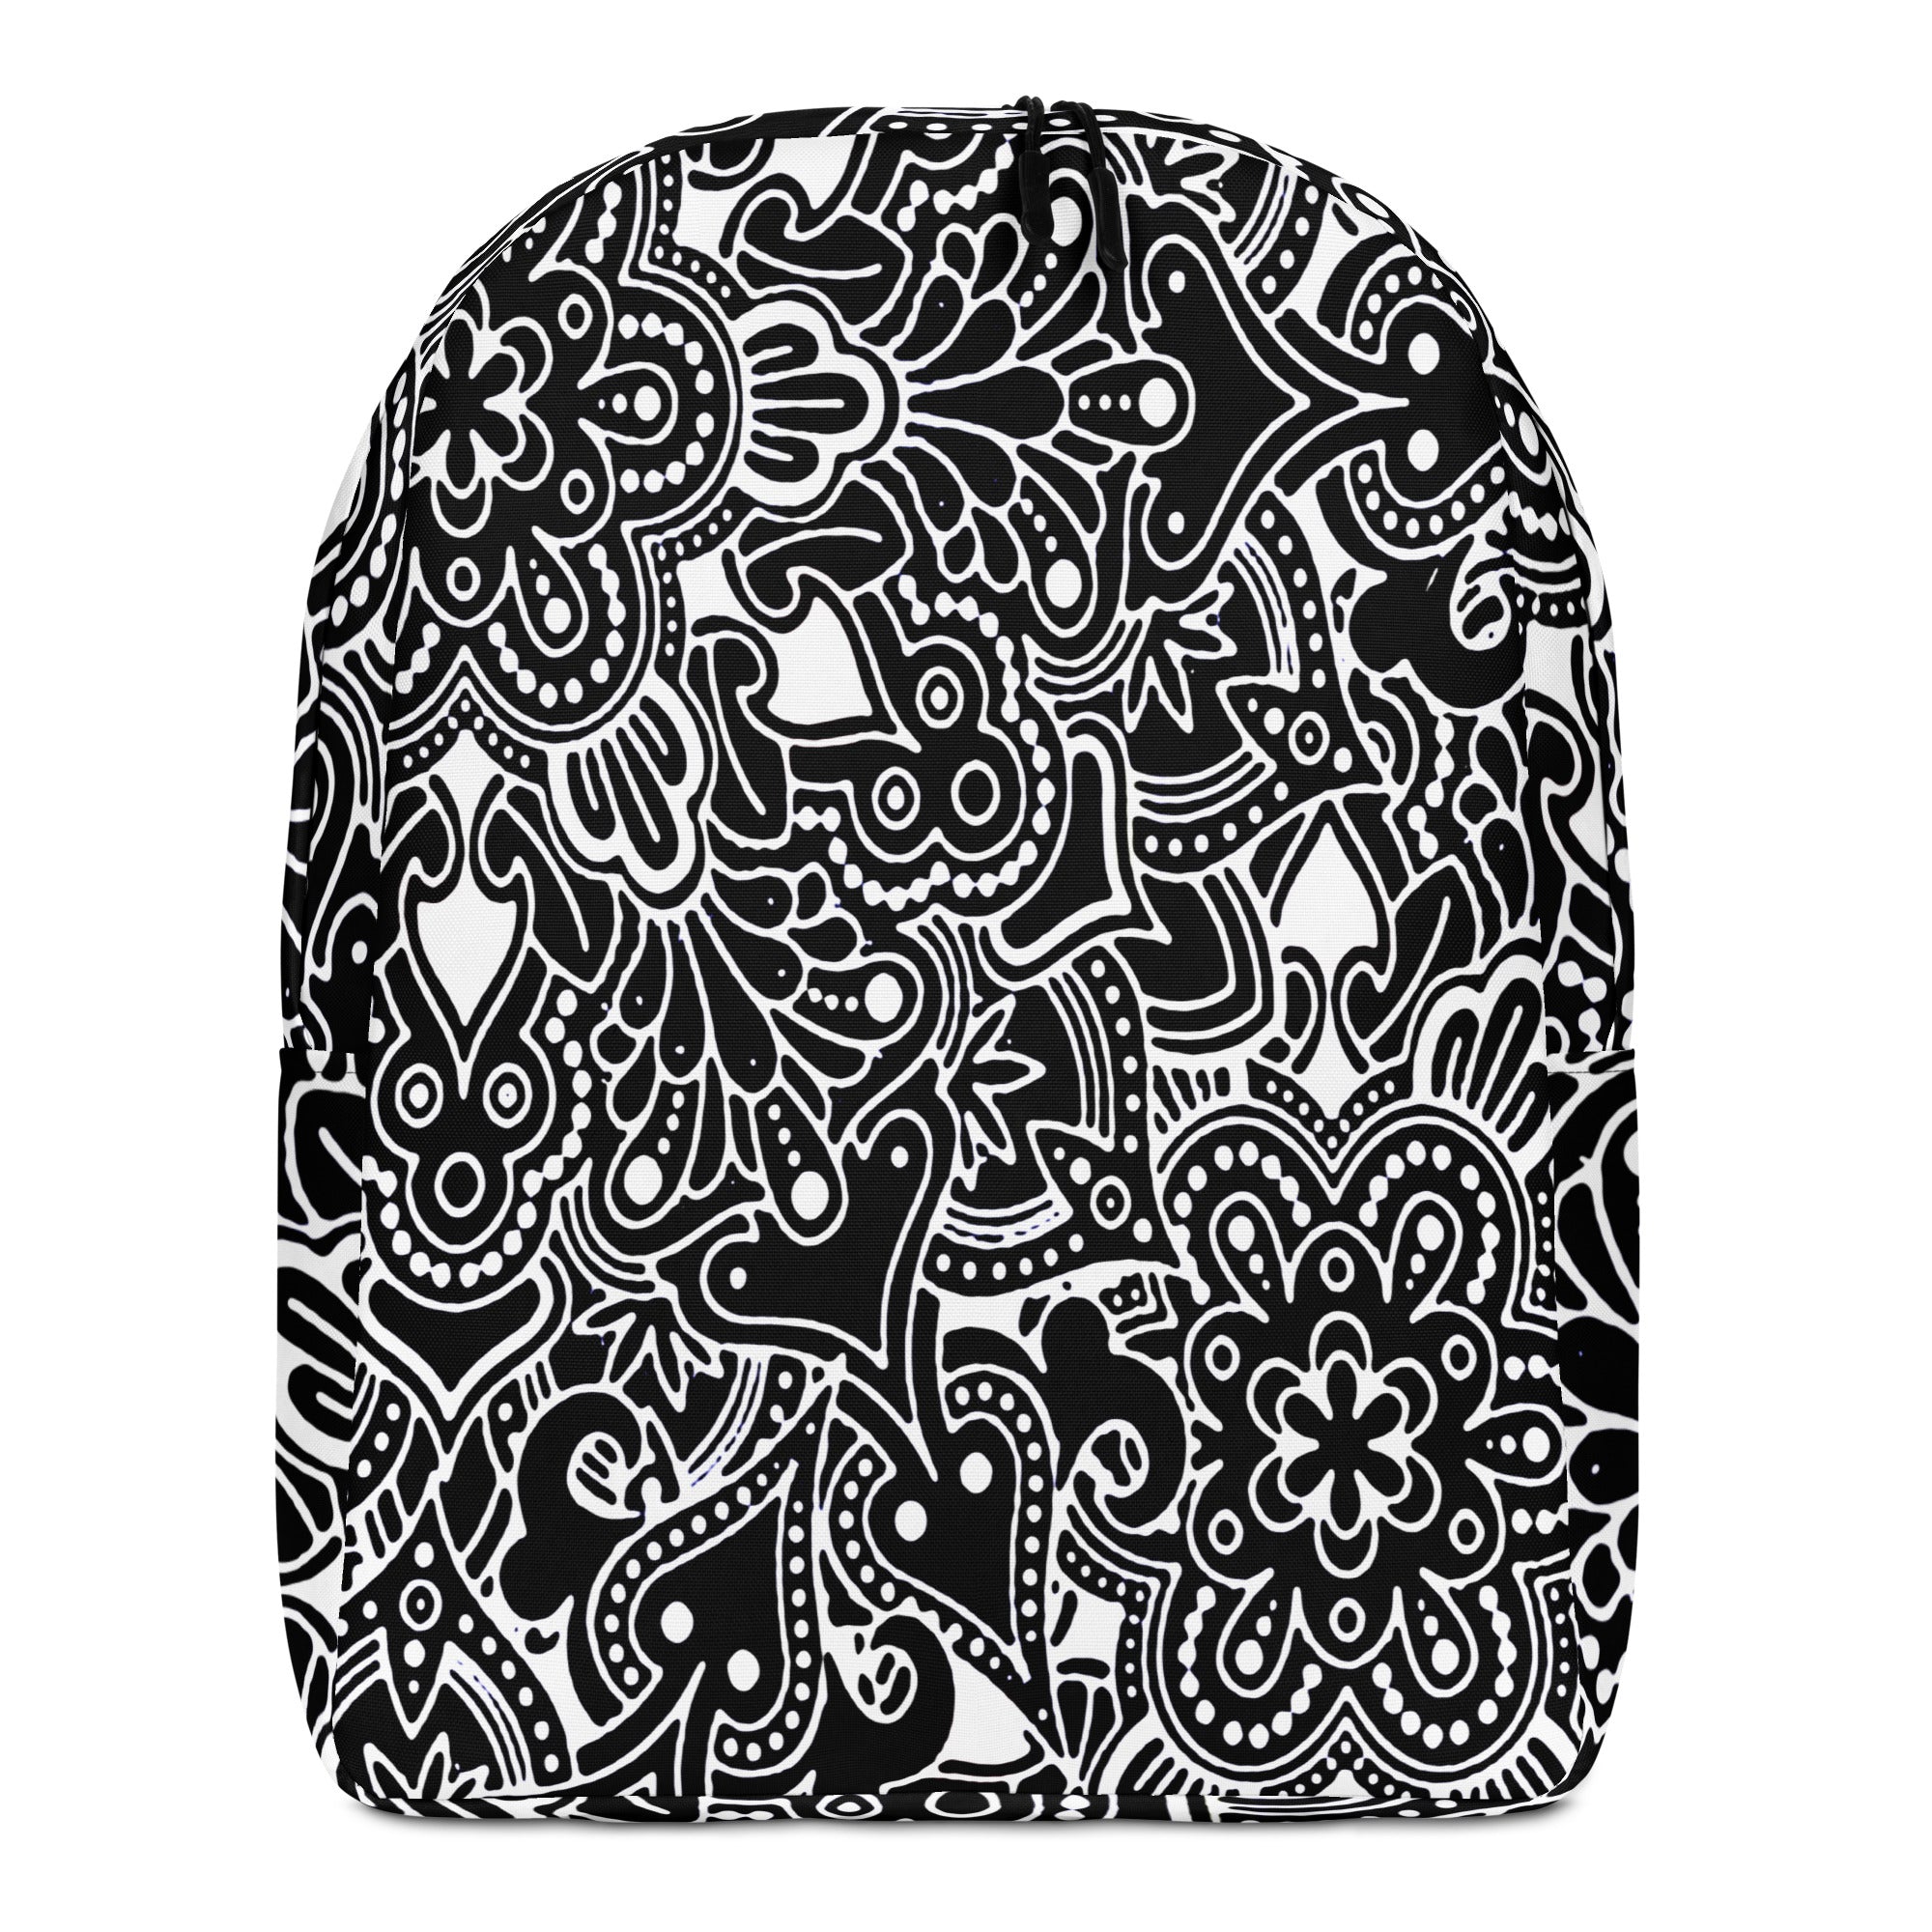 Minimalist Backpack Artsy Paisley Design